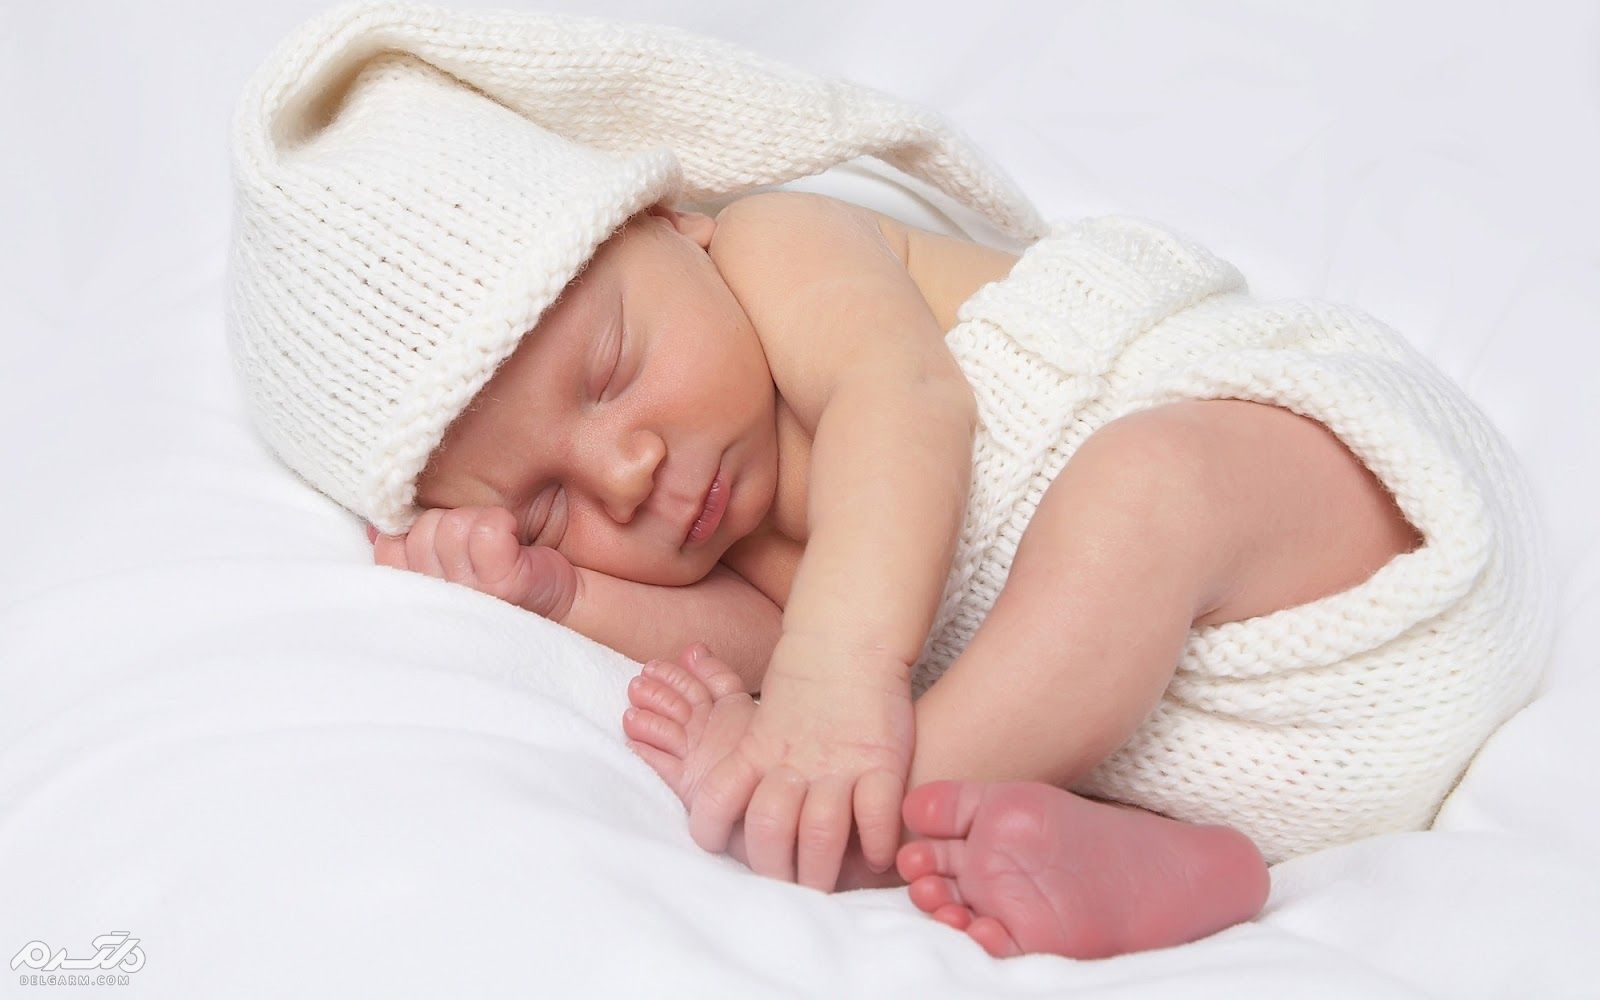  اهمیت چکاپ بیضه های نوزاد تازه متولد شده